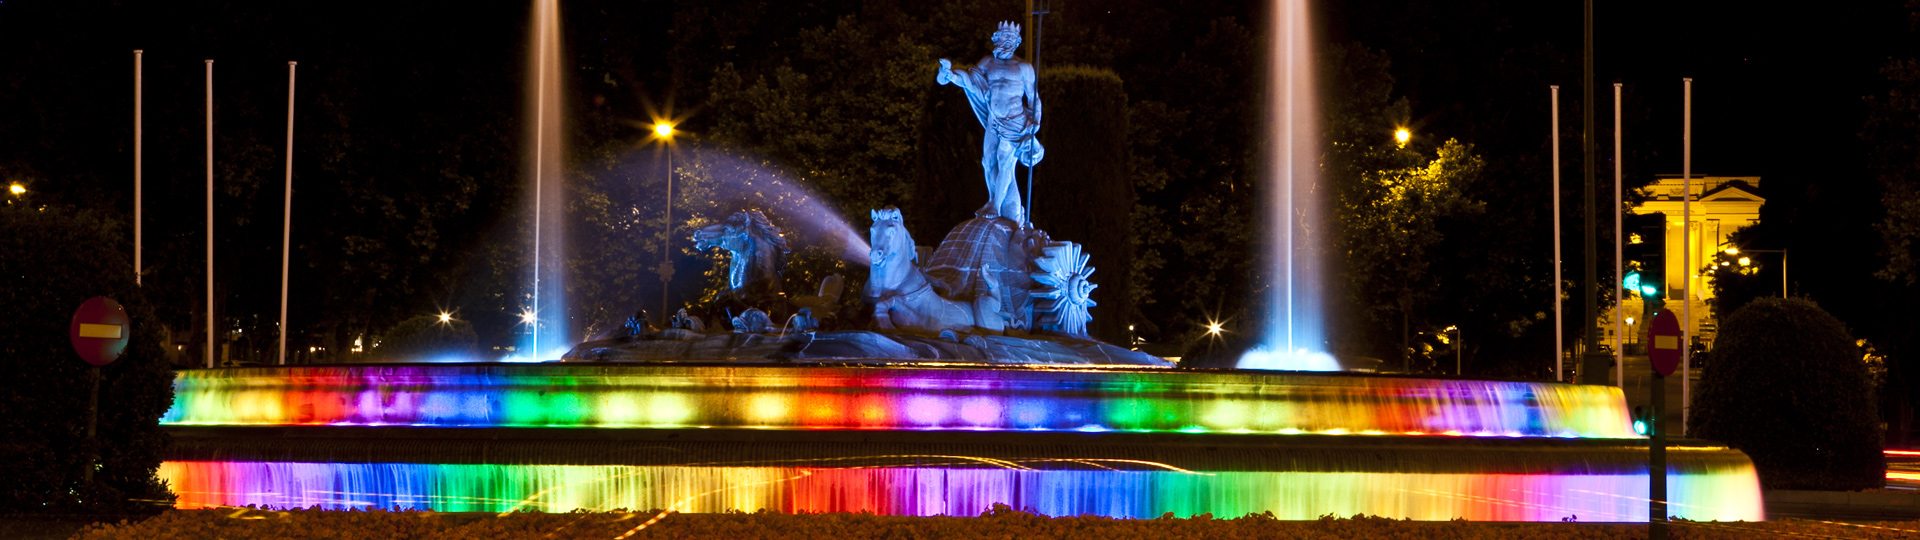 Fontanna Neptuna w Madrycie udekorowana z okazji międzynarodowego święta World Pride 